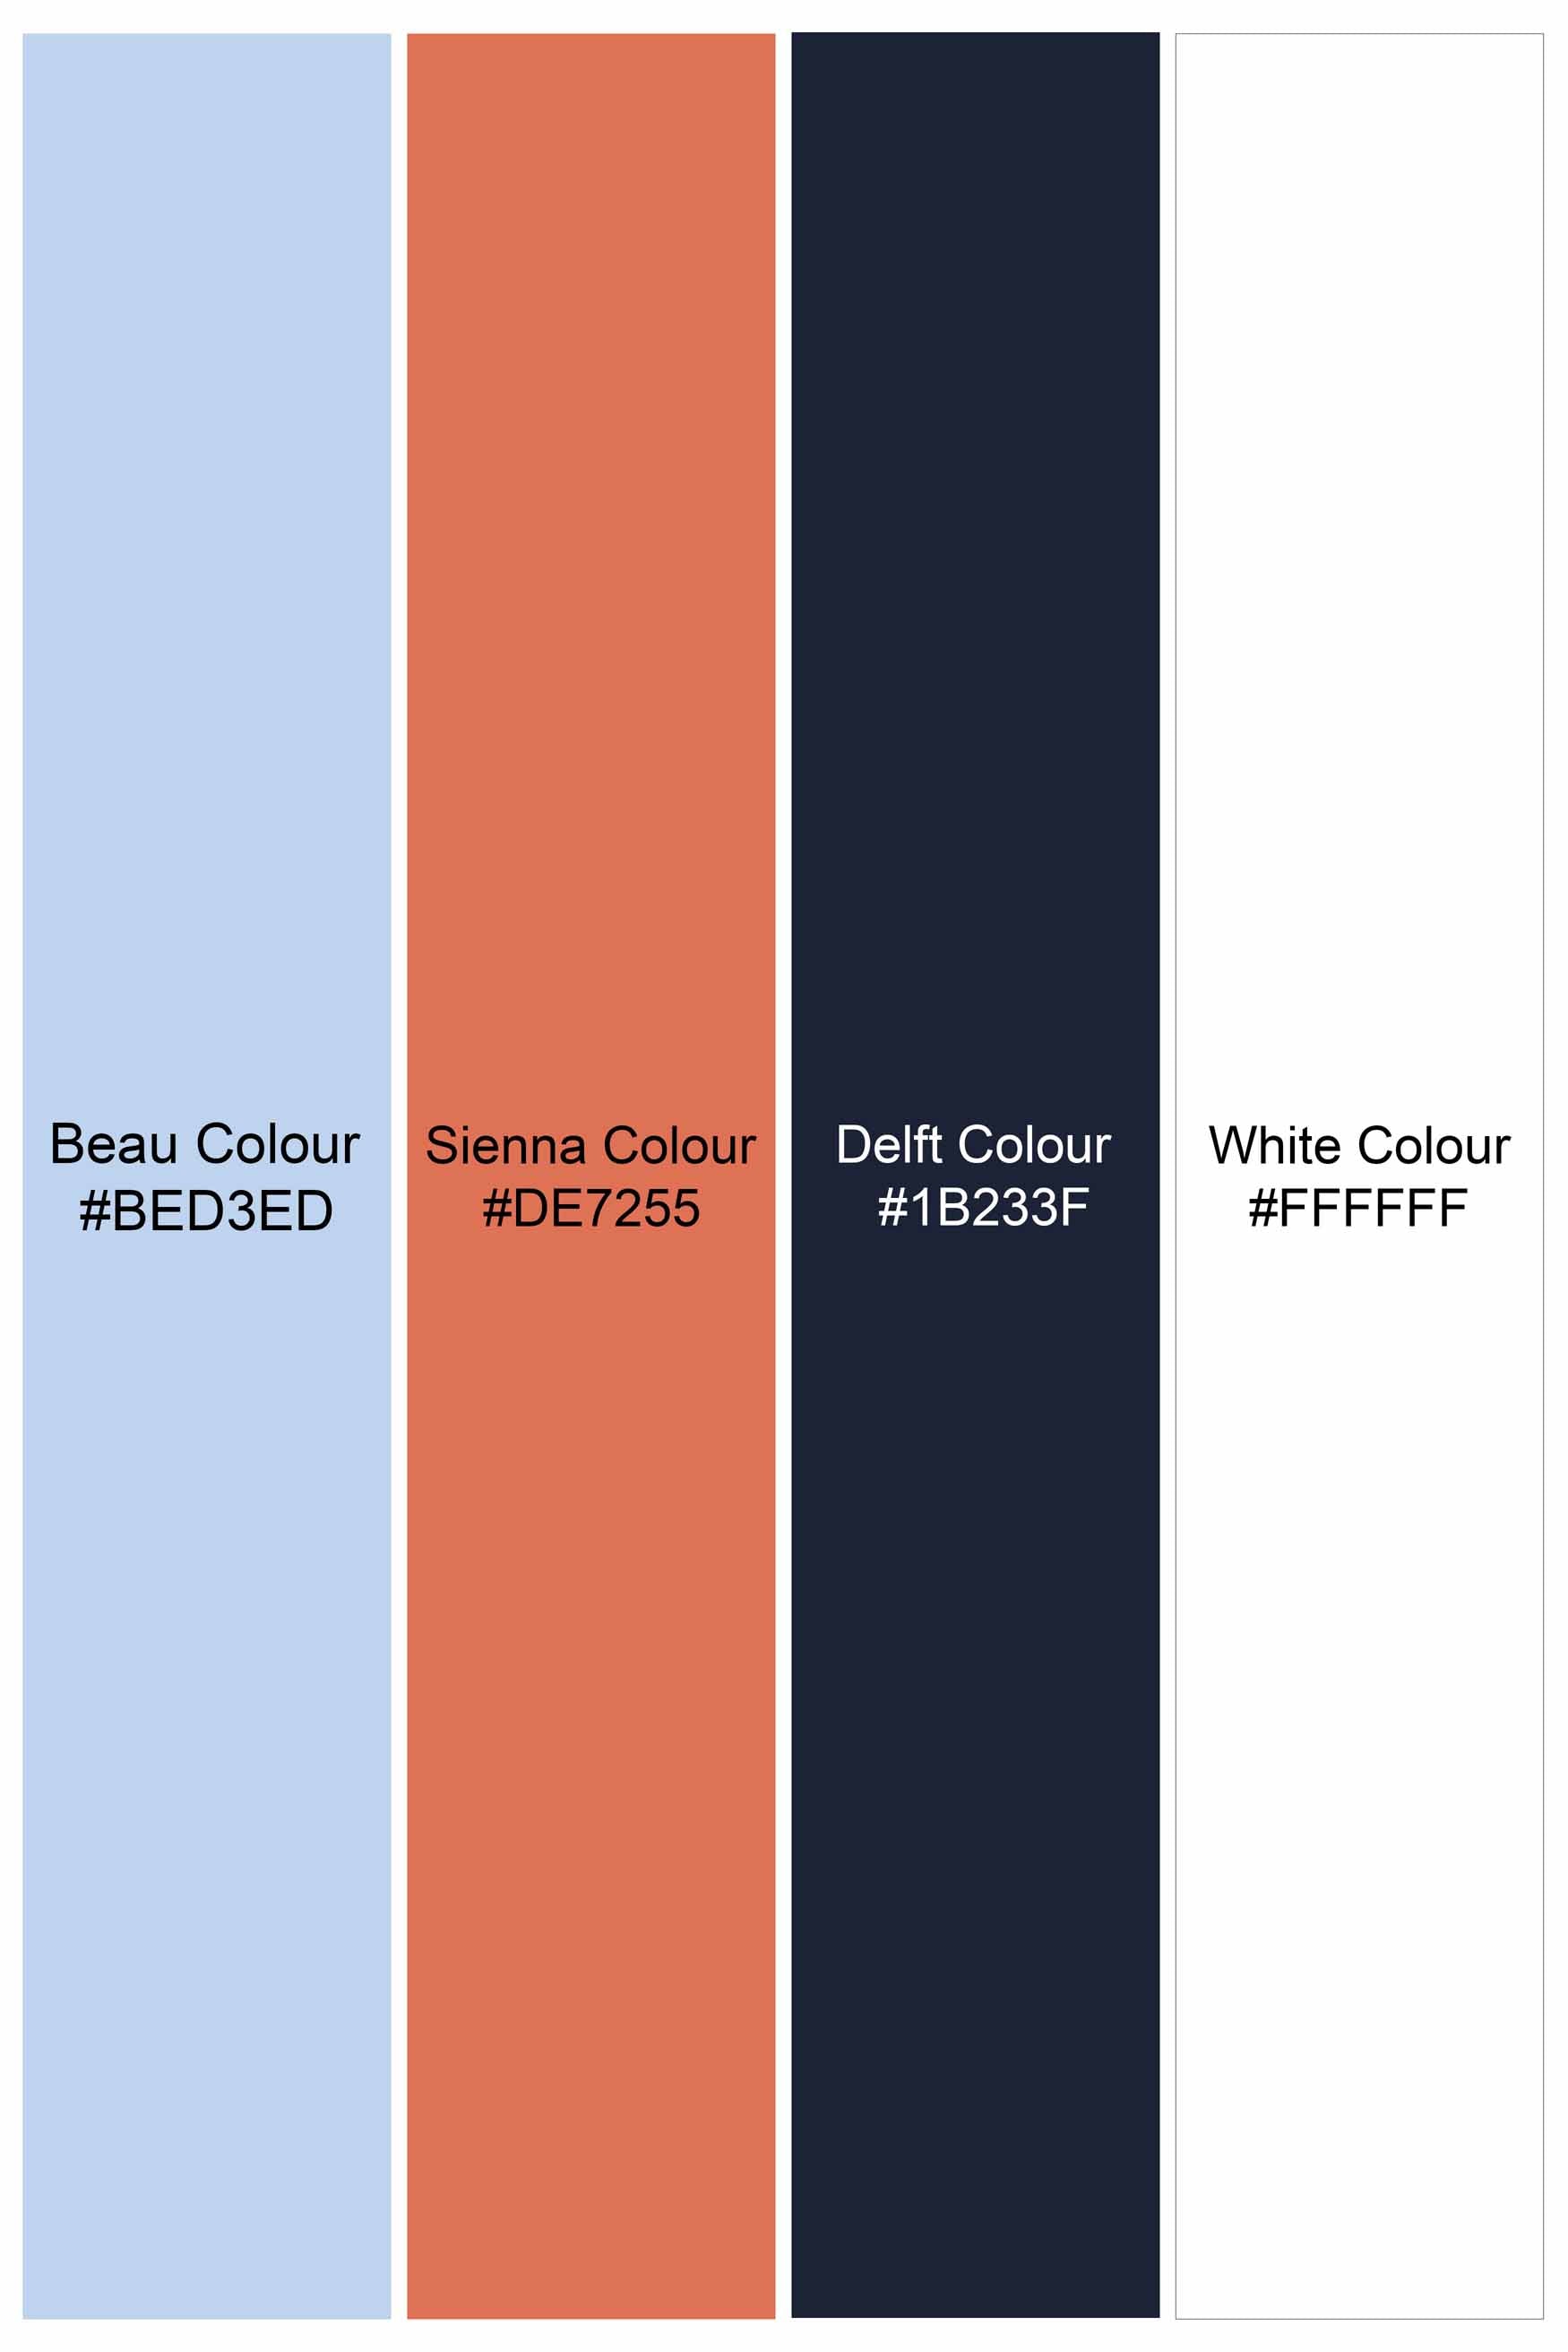 Beau Blue and Bright White Multicolour Striped Royal Oxford Shirt 11394-38, 11394-H-38, 11394-39, 11394-H-39, 11394-40, 11394-H-40, 11394-42, 11394-H-42, 11394-44, 11394-H-44, 11394-46, 11394-H-46, 11394-48, 11394-H-48, 11394-50, 11394-H-50, 11394-52, 11394-H-52